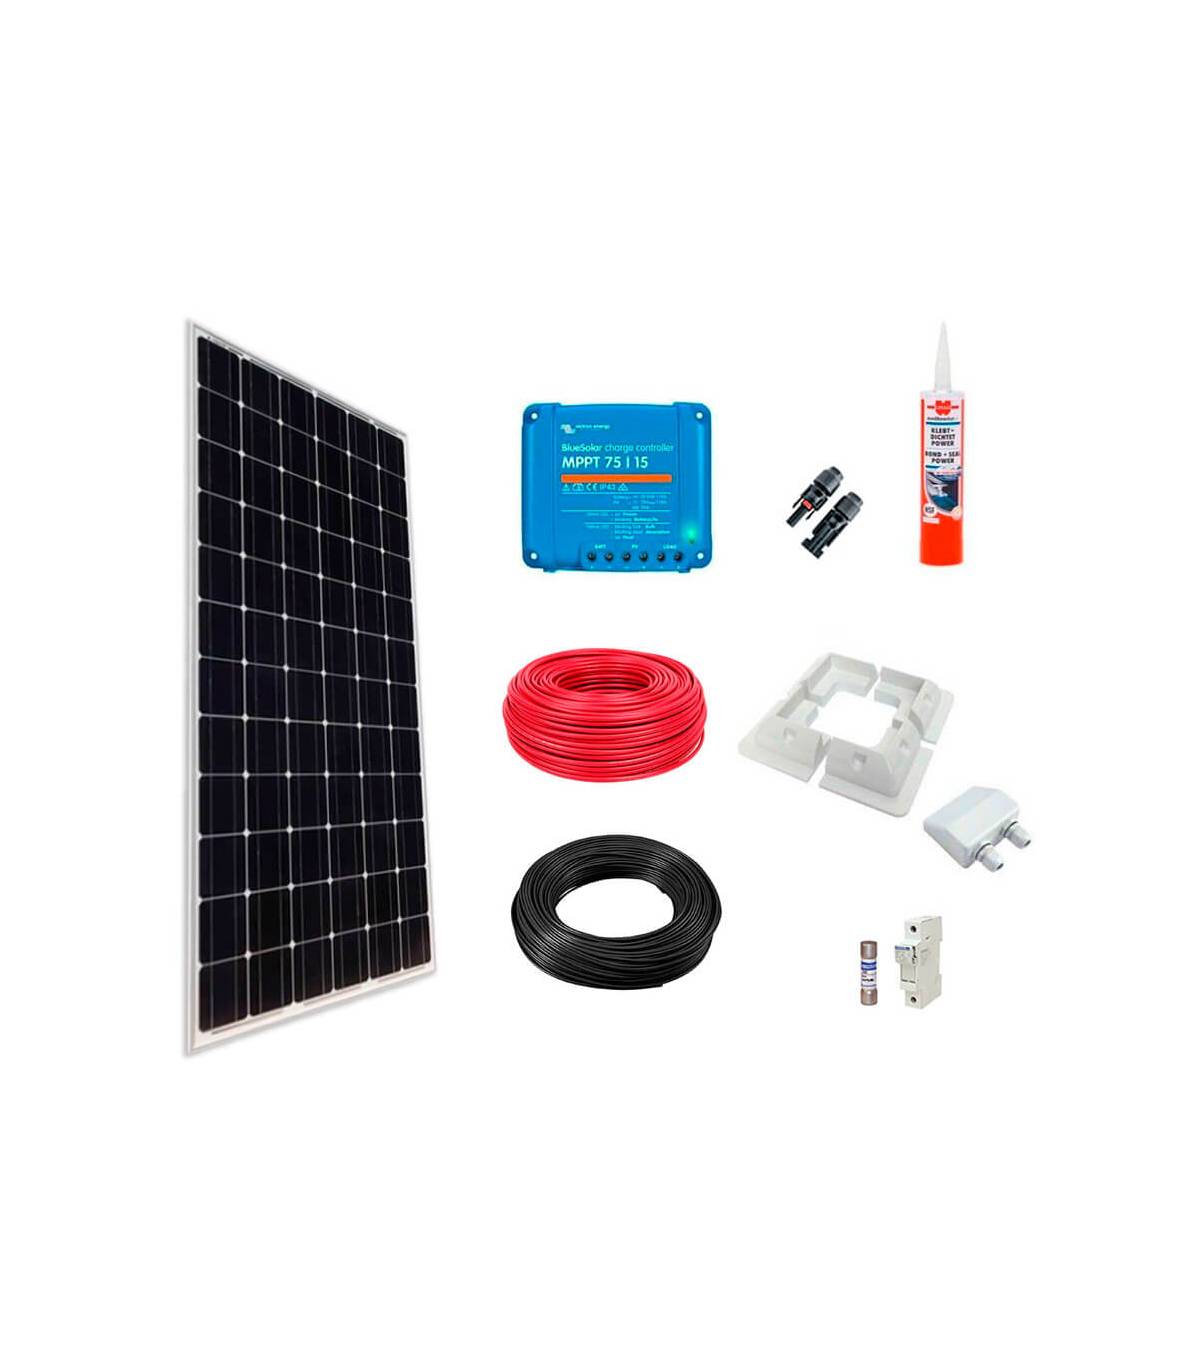 Kit solar autocaravana 150W MPPT